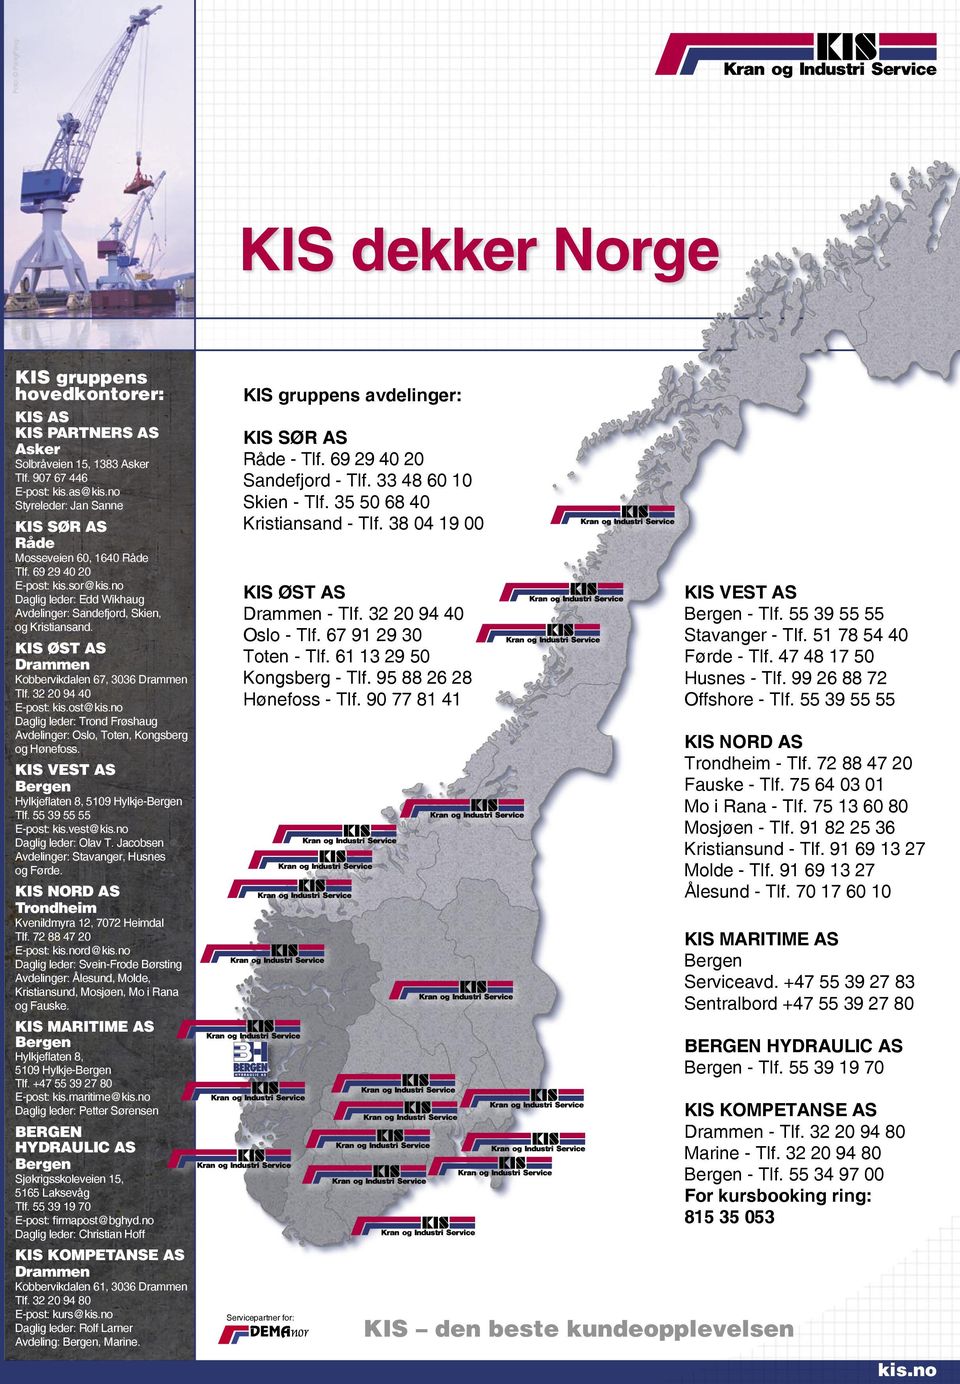 KIS ØST AS Drammen Kobbervikdalen 67, 3036 Drammen Tlf. 32 20 94 40 E-post: kis.ost@kis.no Daglig leder: Trond Frøshaug Avdelinger: Oslo, Toten, Kongsberg og Hønefoss.